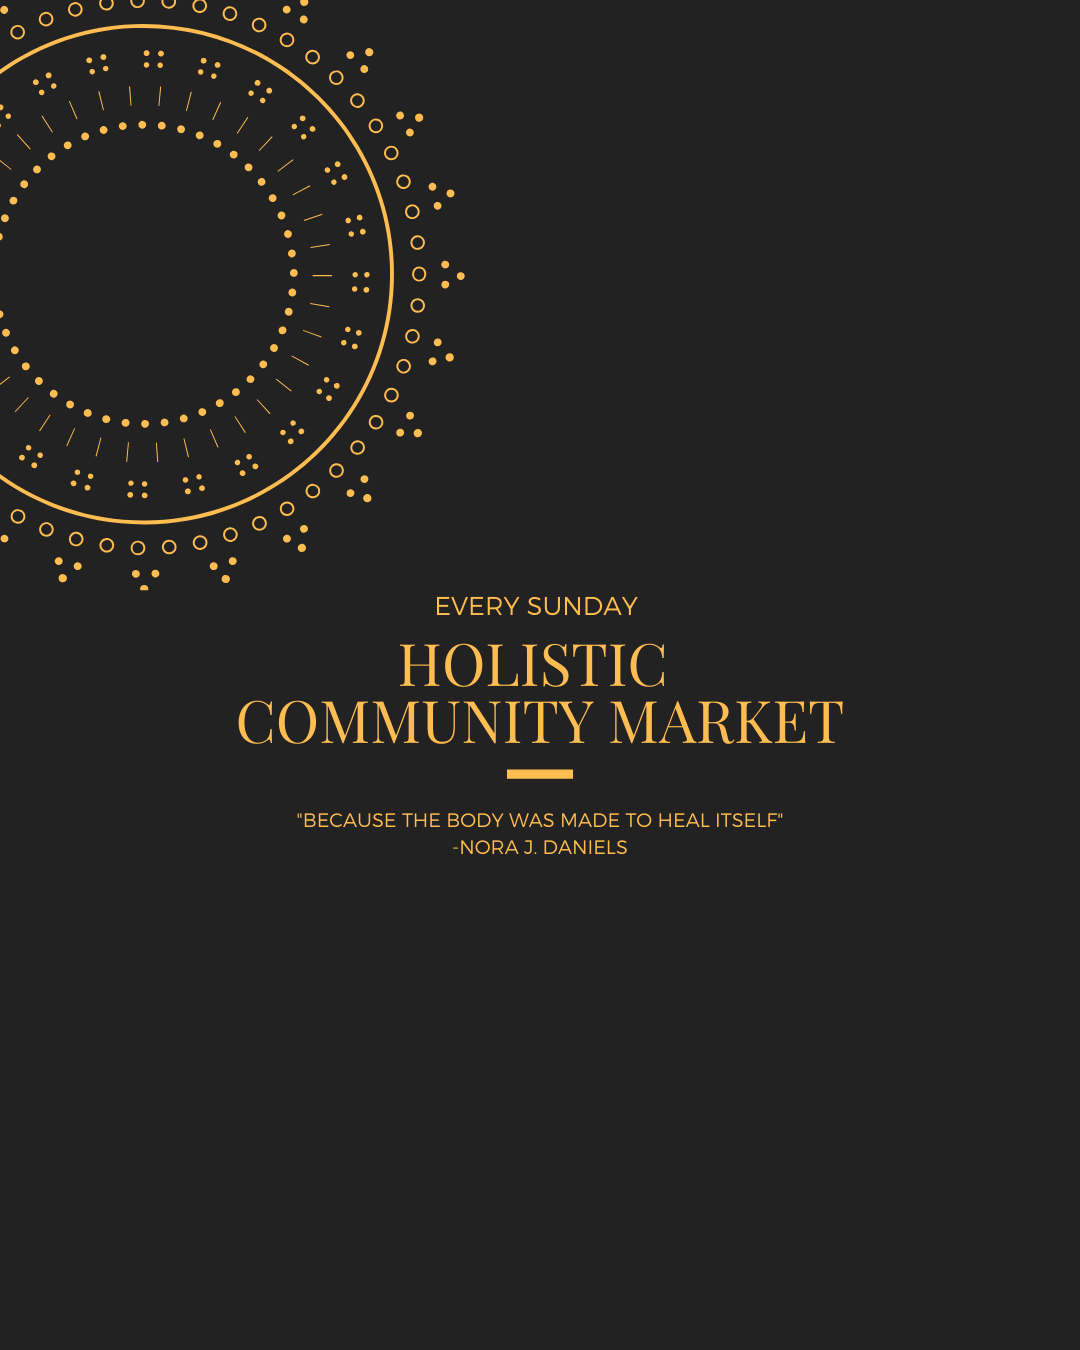 Holistic Community Market (Exposition Park)- Free to Public